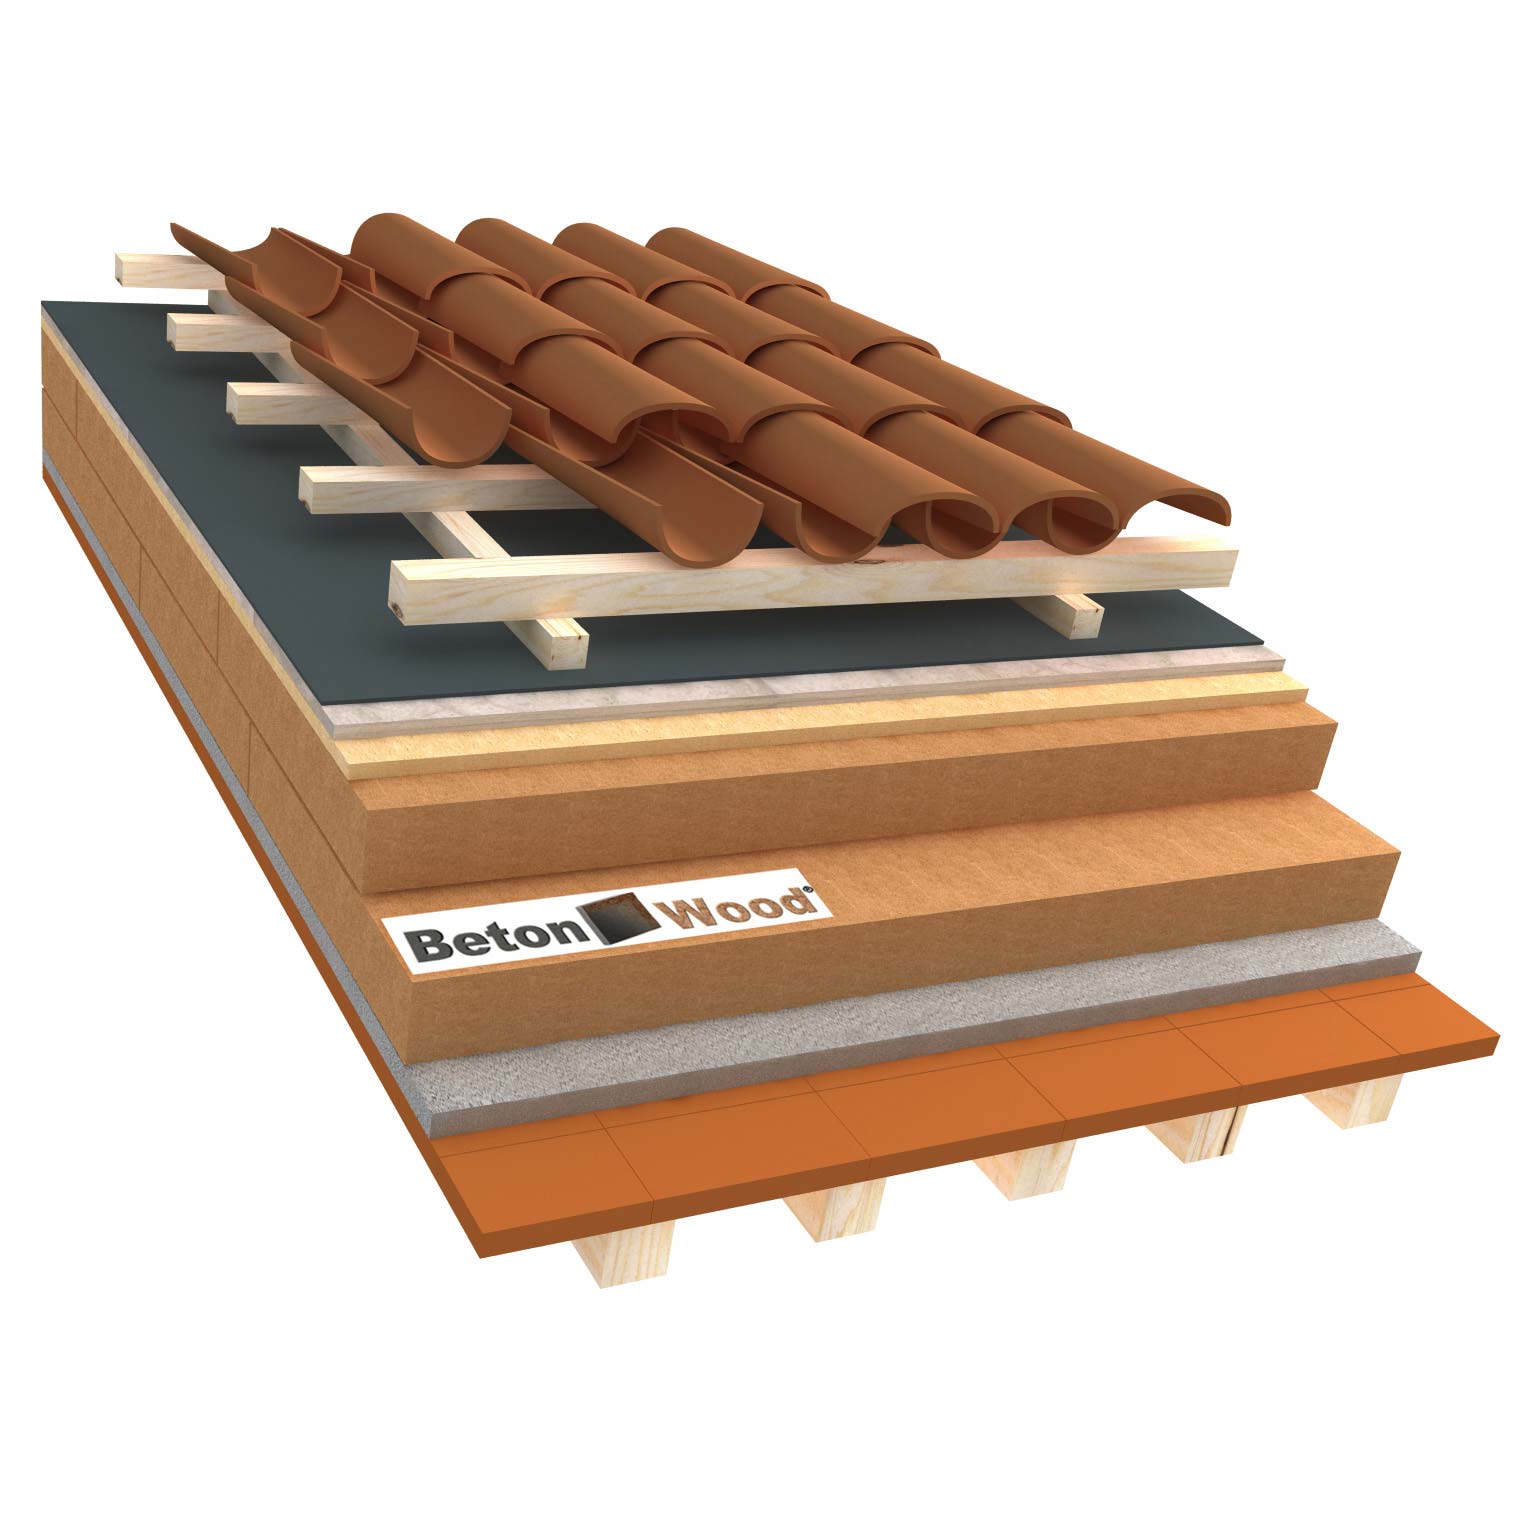 Sistema tetto E fibra di legno therm, isorel e cementolegno